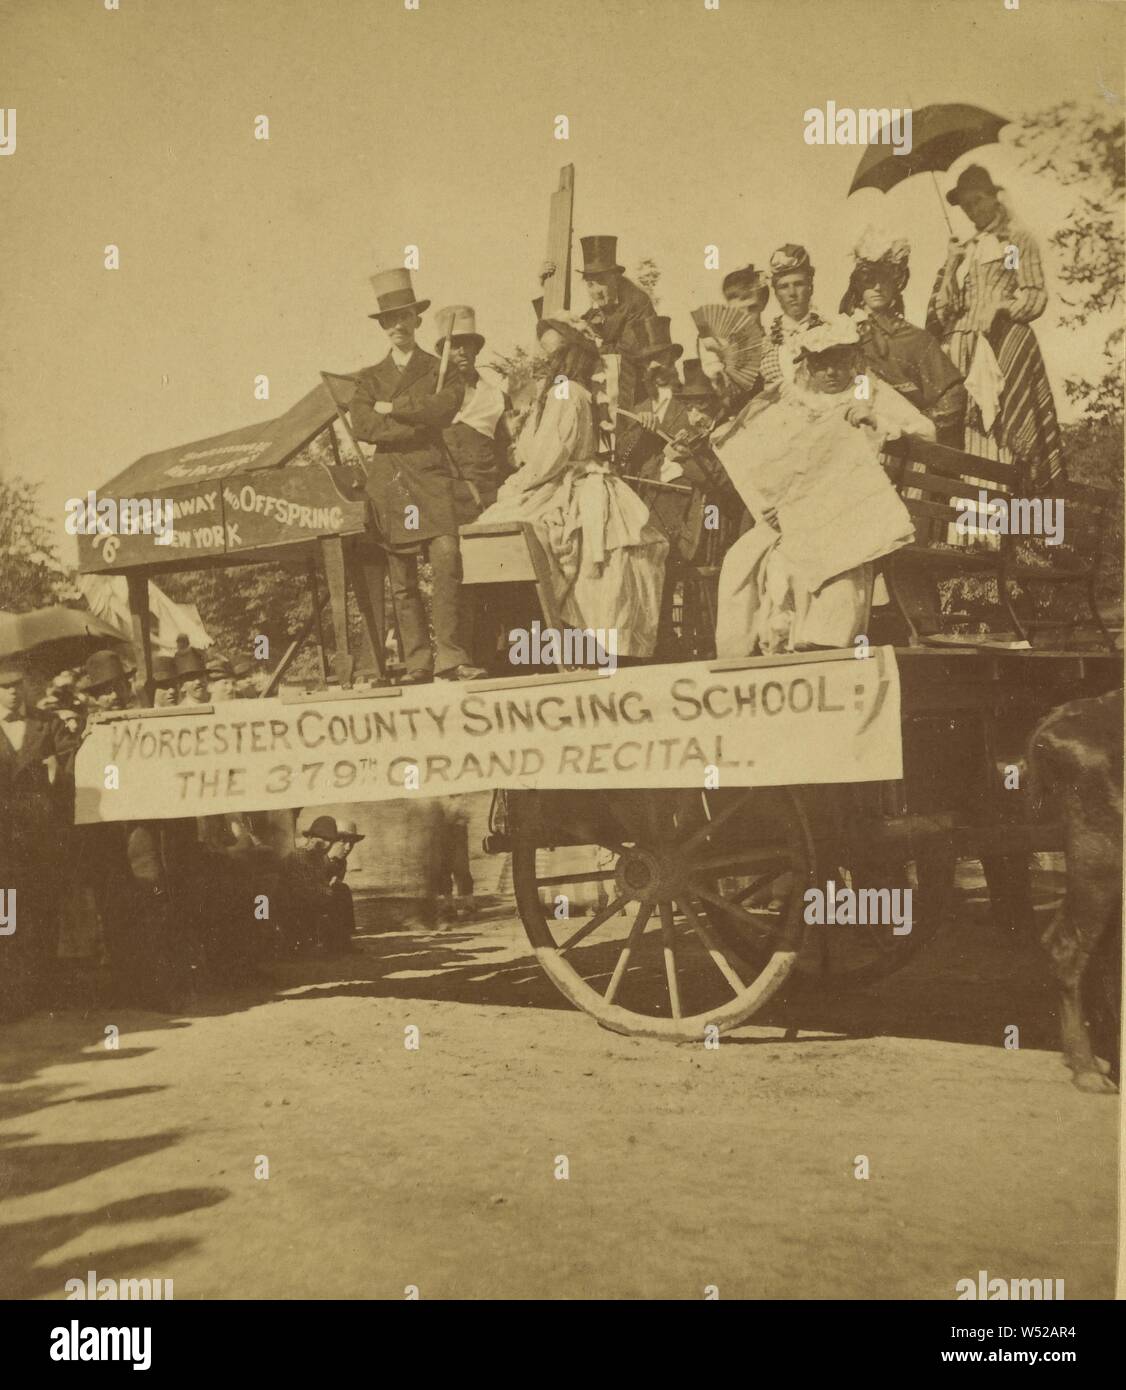 A cavallo il carro di Worcester County cantando scuola: 379 Grand considerando., Frank Lawrence (American, 1837 - 1914), circa 1875, albume silver stampa Foto Stock